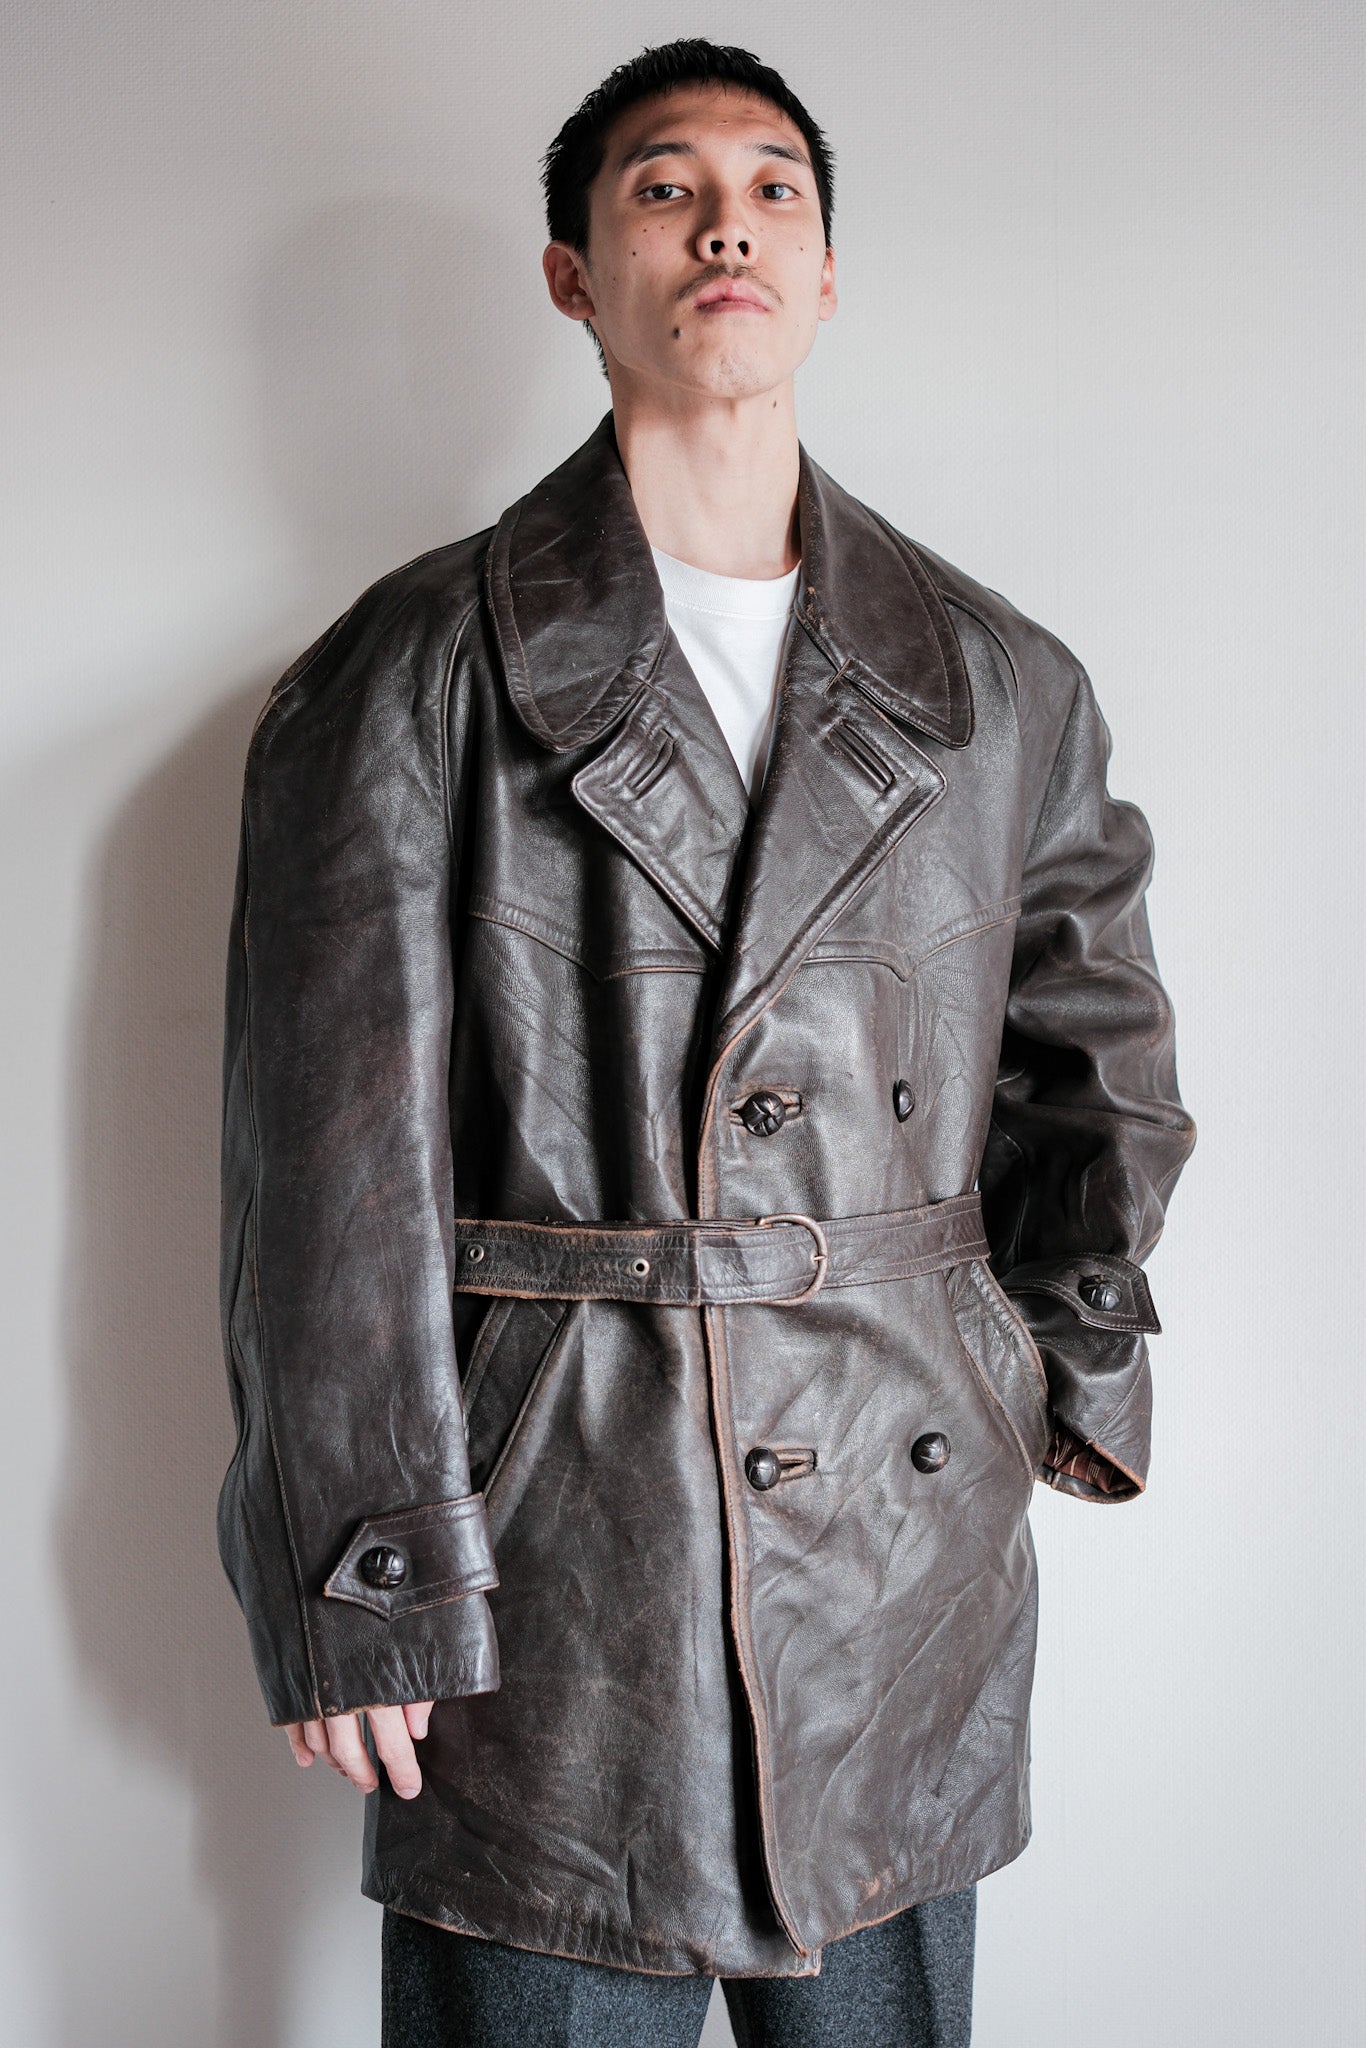 [〜50年代]法國復古雙胸皮革工作外套。54“ Adolphe Lafont”